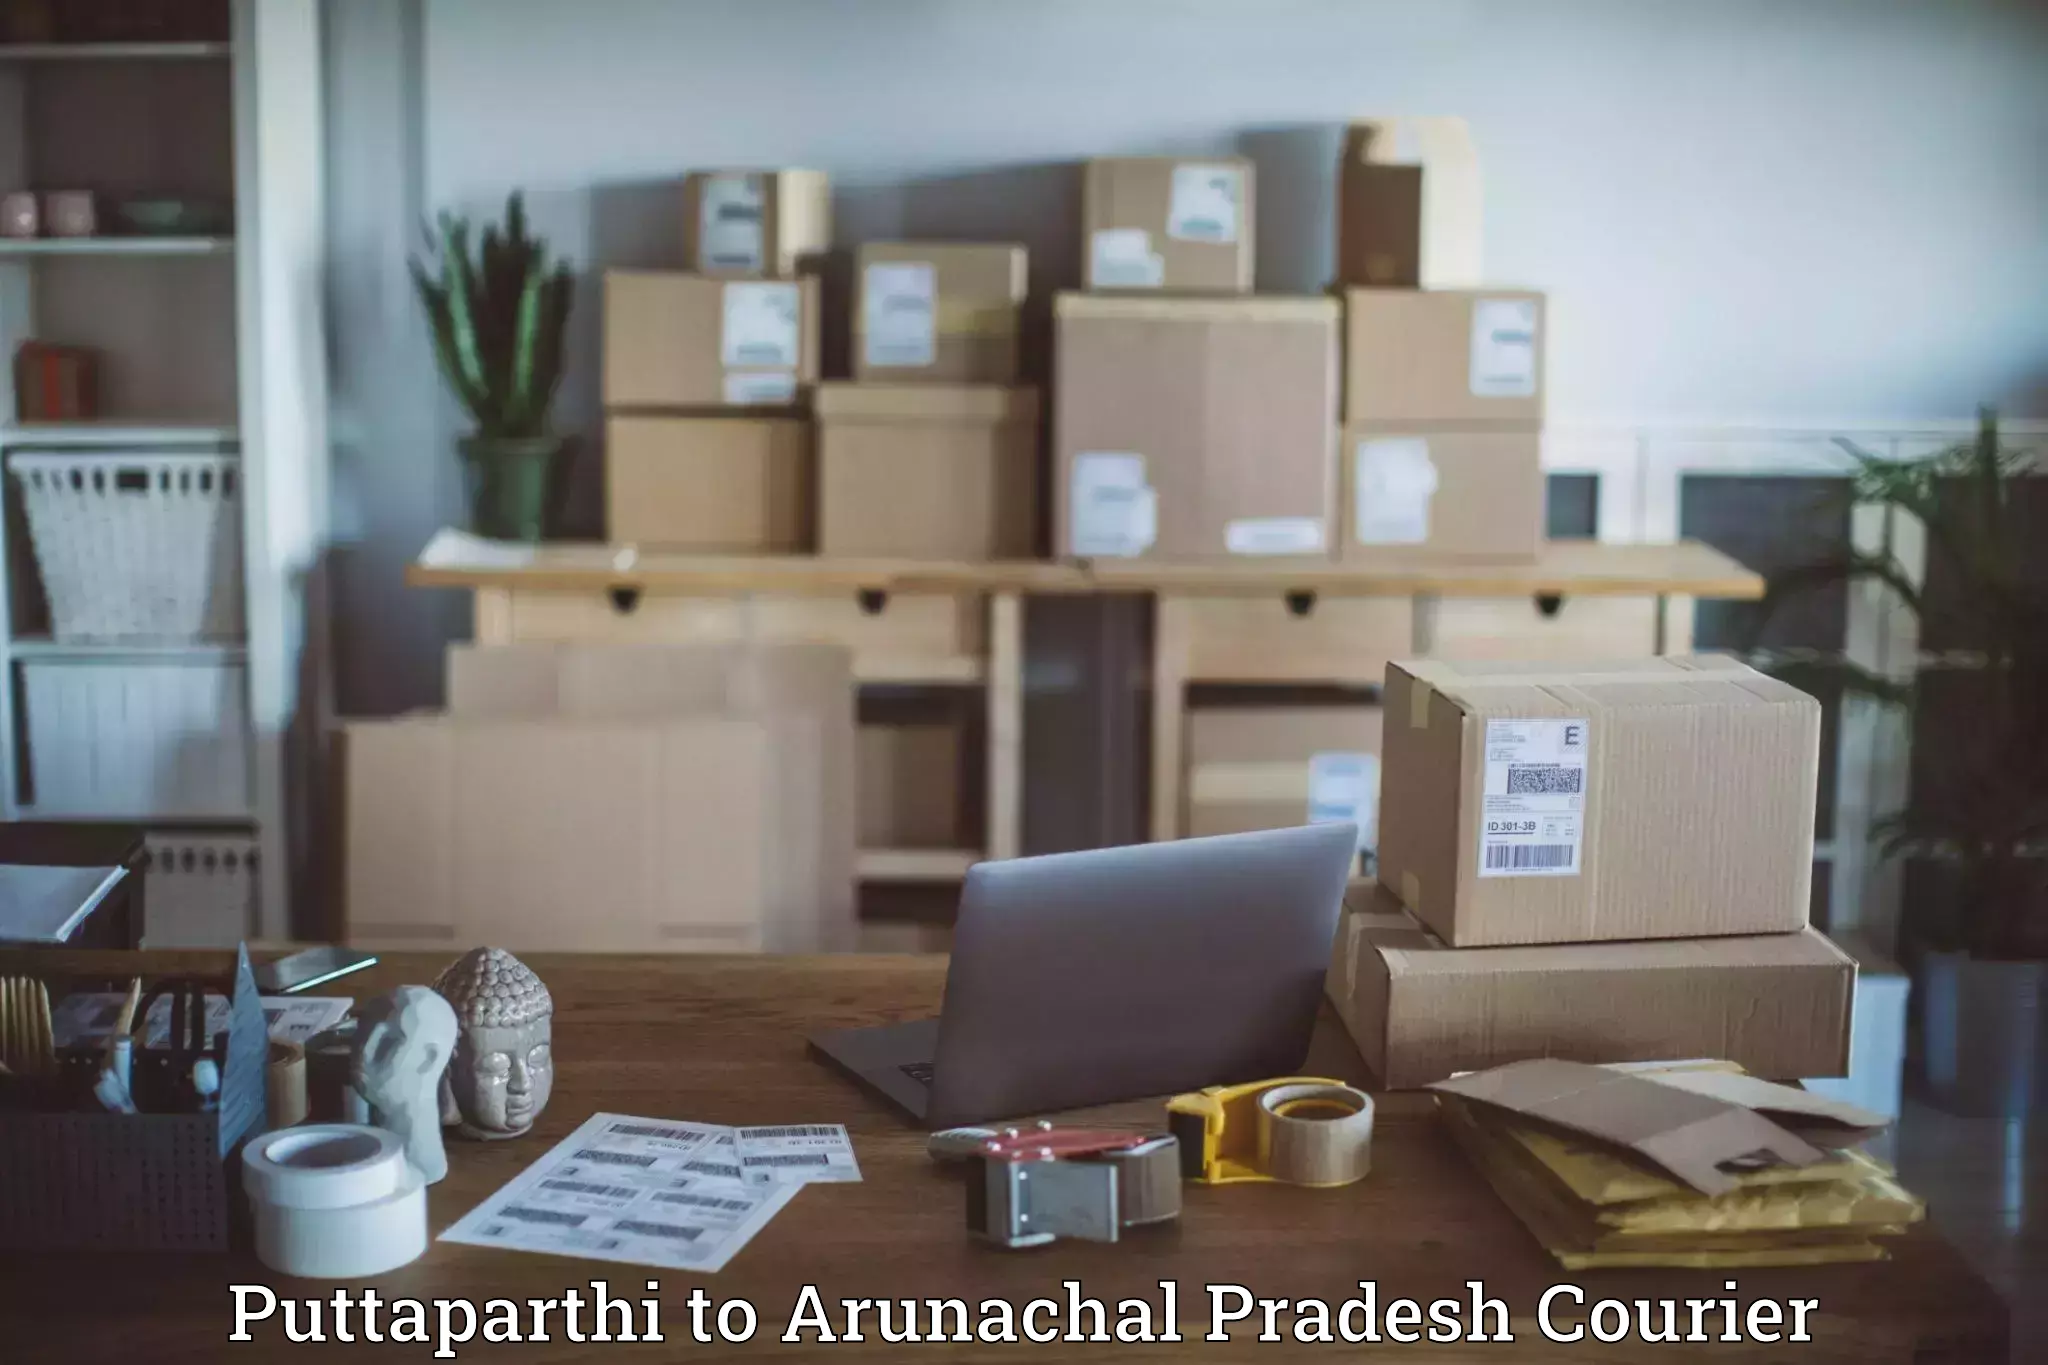 Cash on delivery service Puttaparthi to Arunachal Pradesh